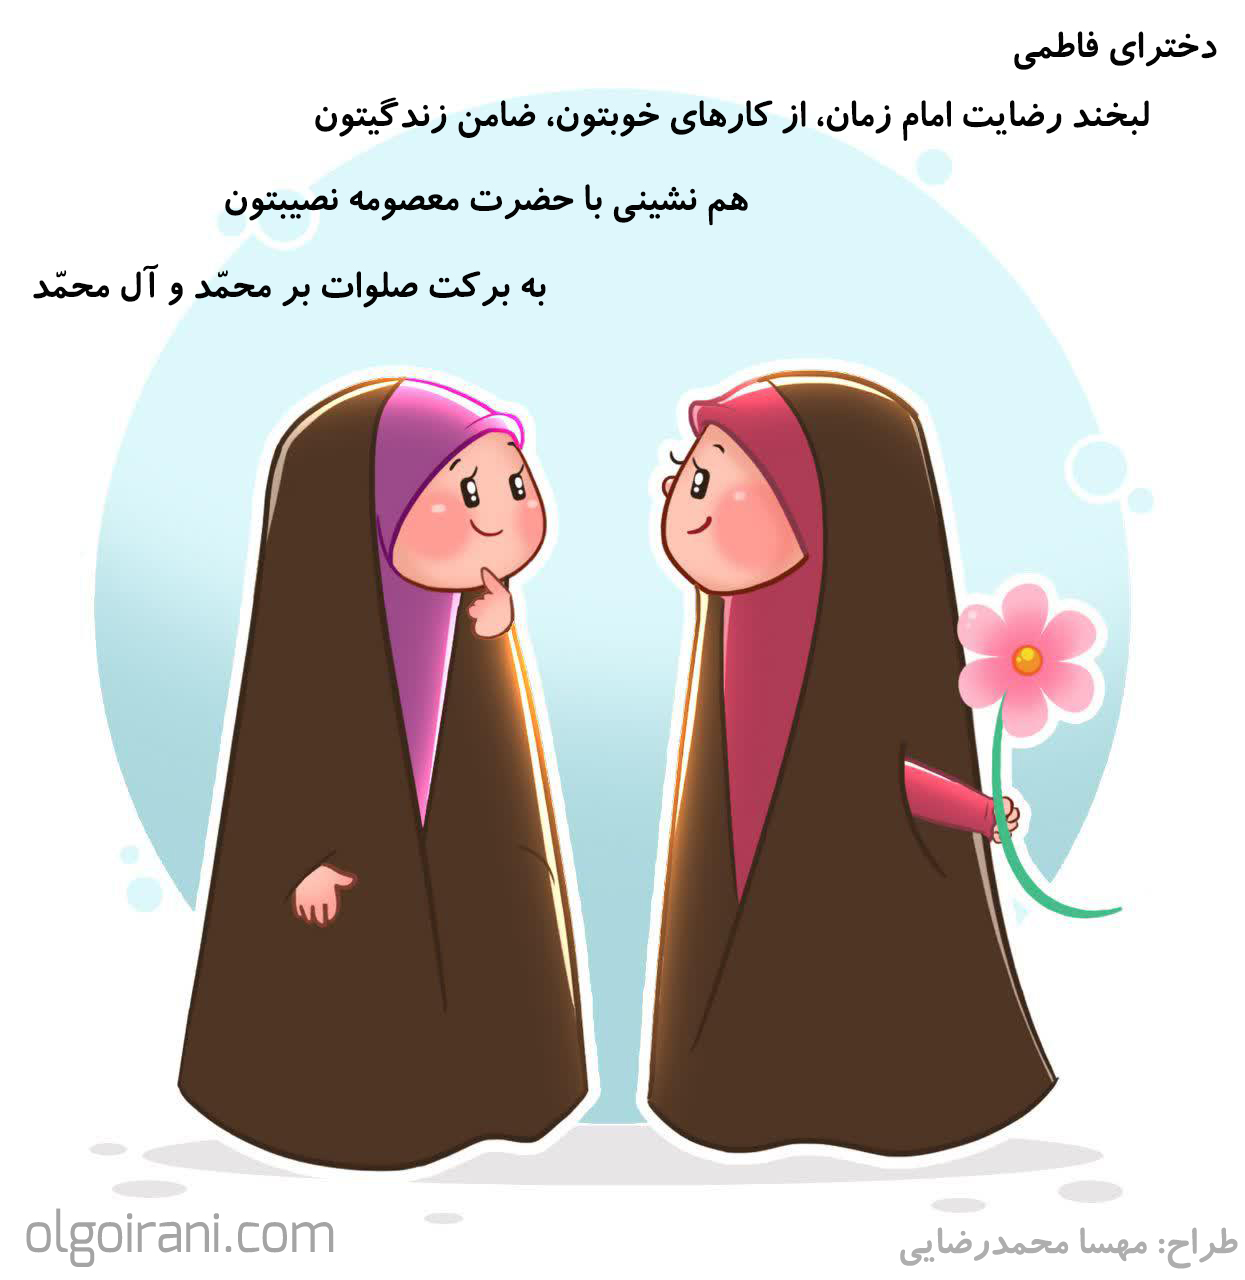 متن تبریک روز دختر - الگو ایرانی